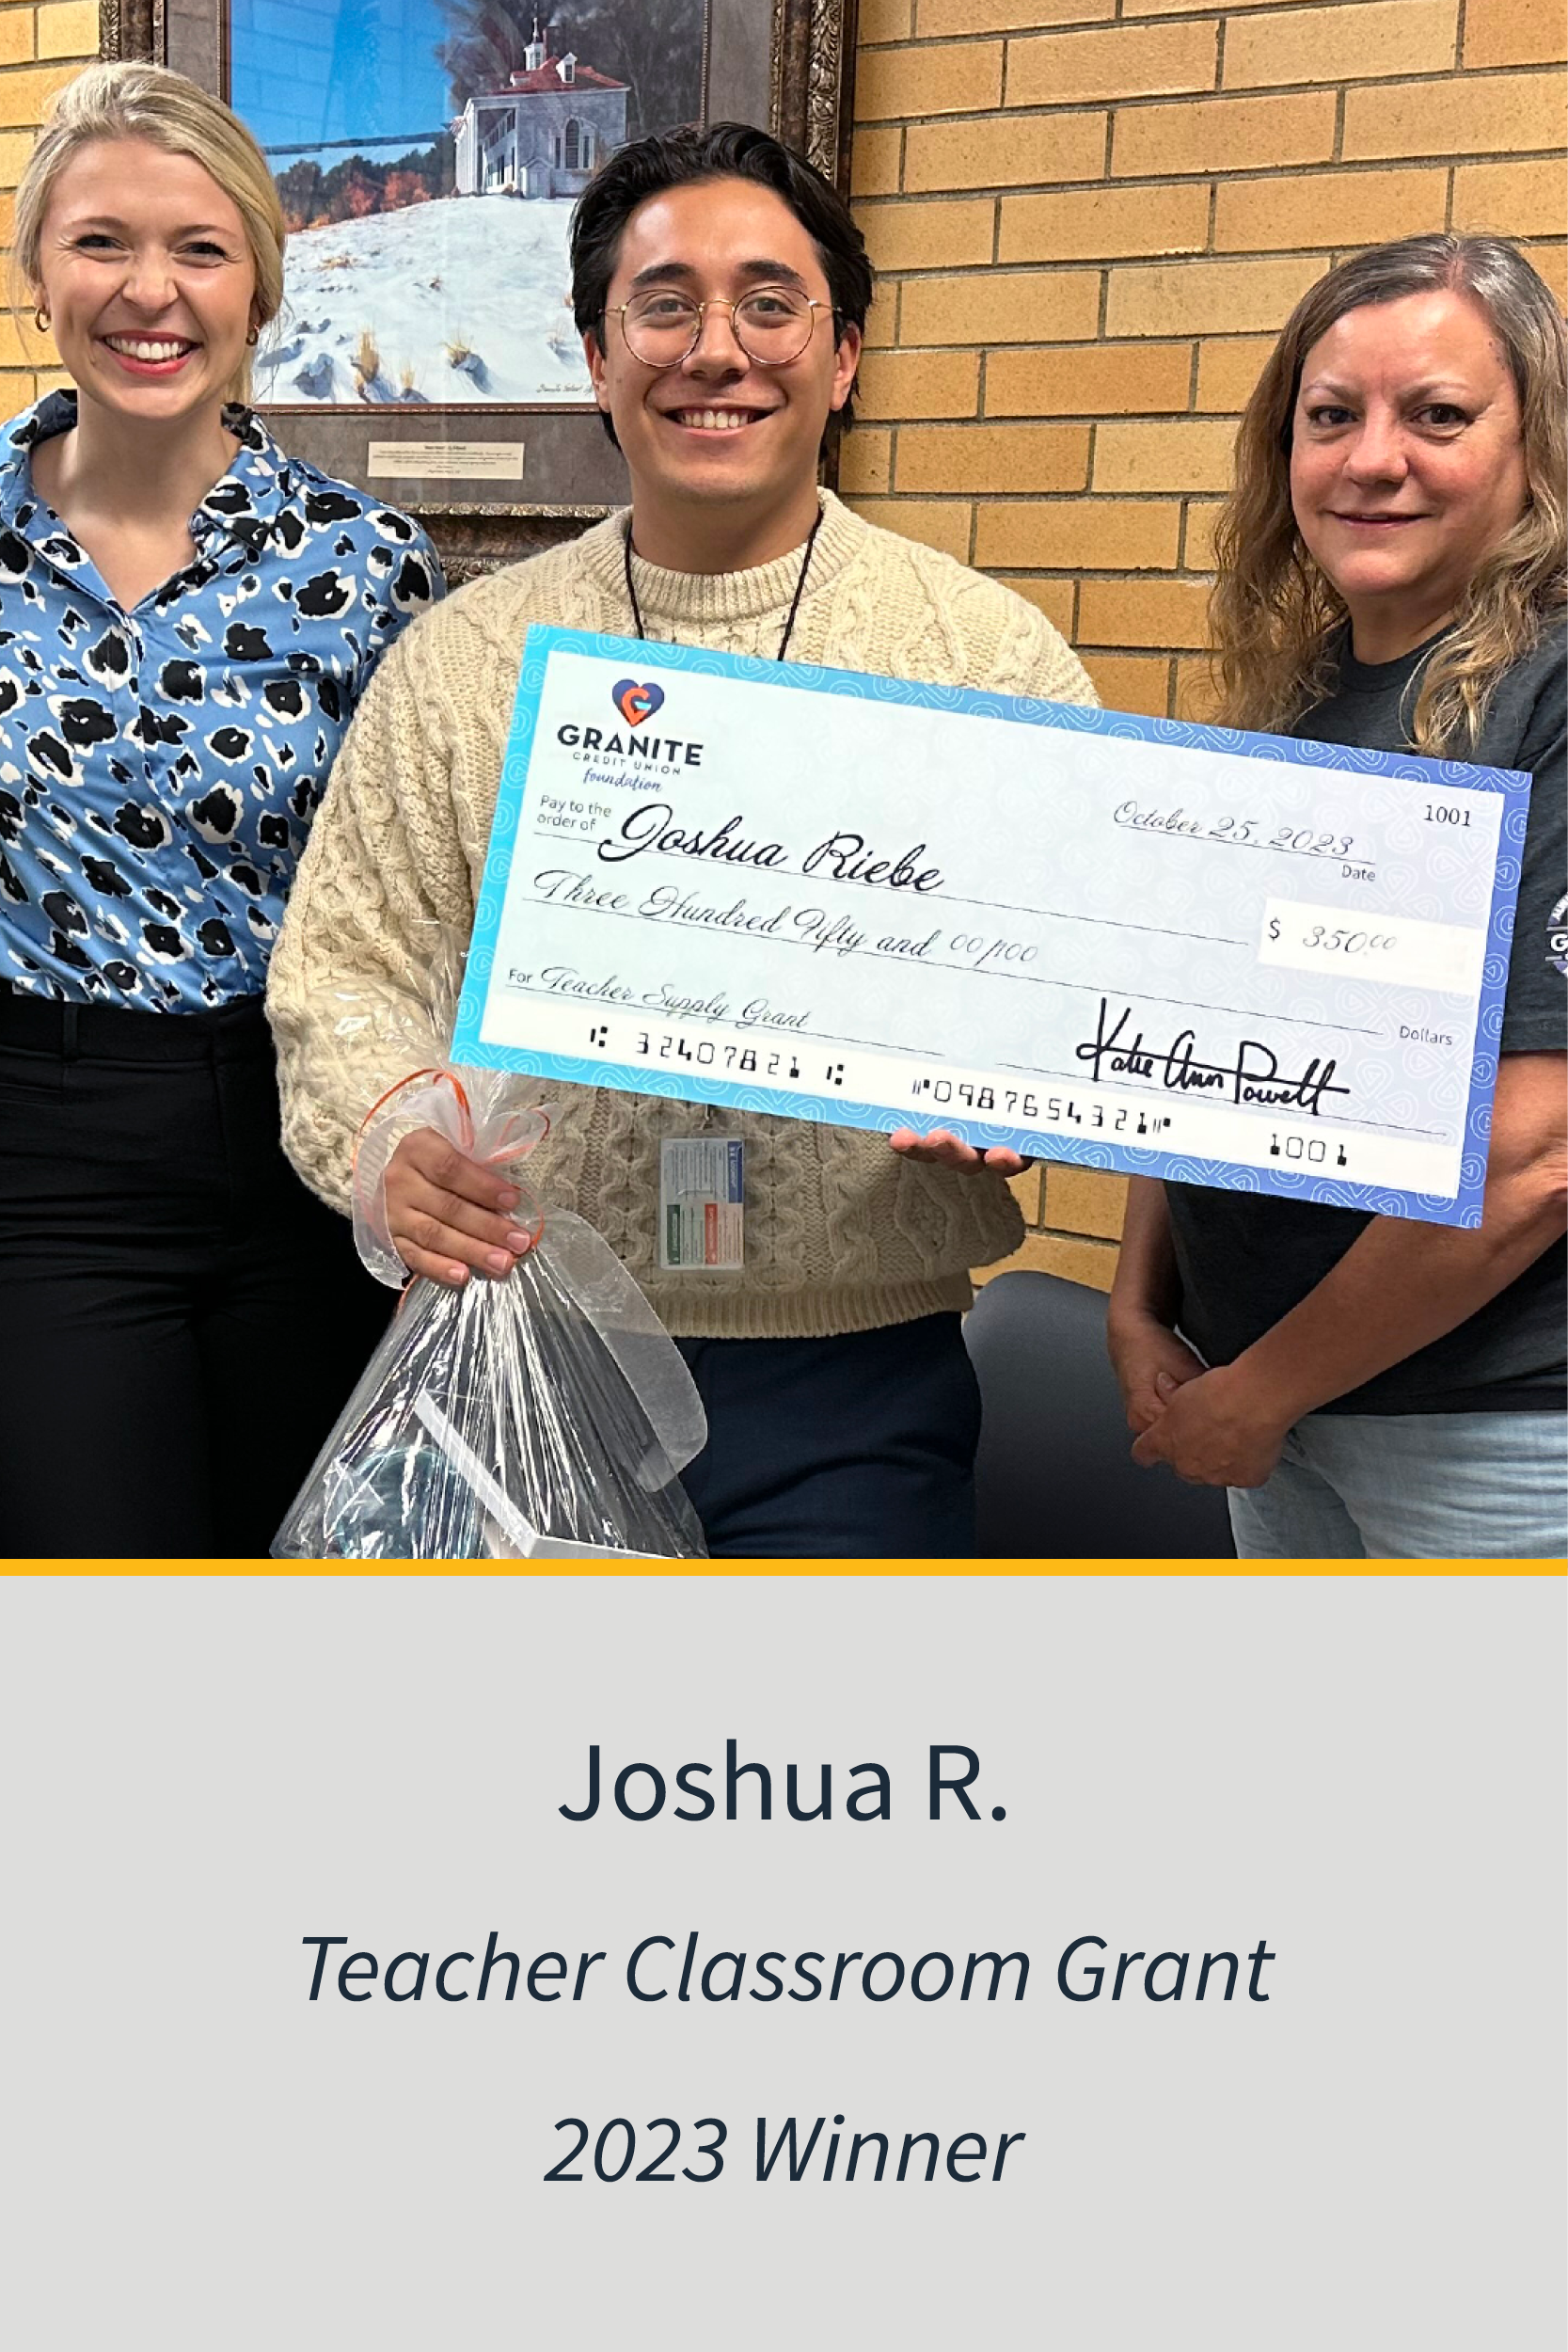 Teachers Classroom Grant 2023 Winner Joshua R.